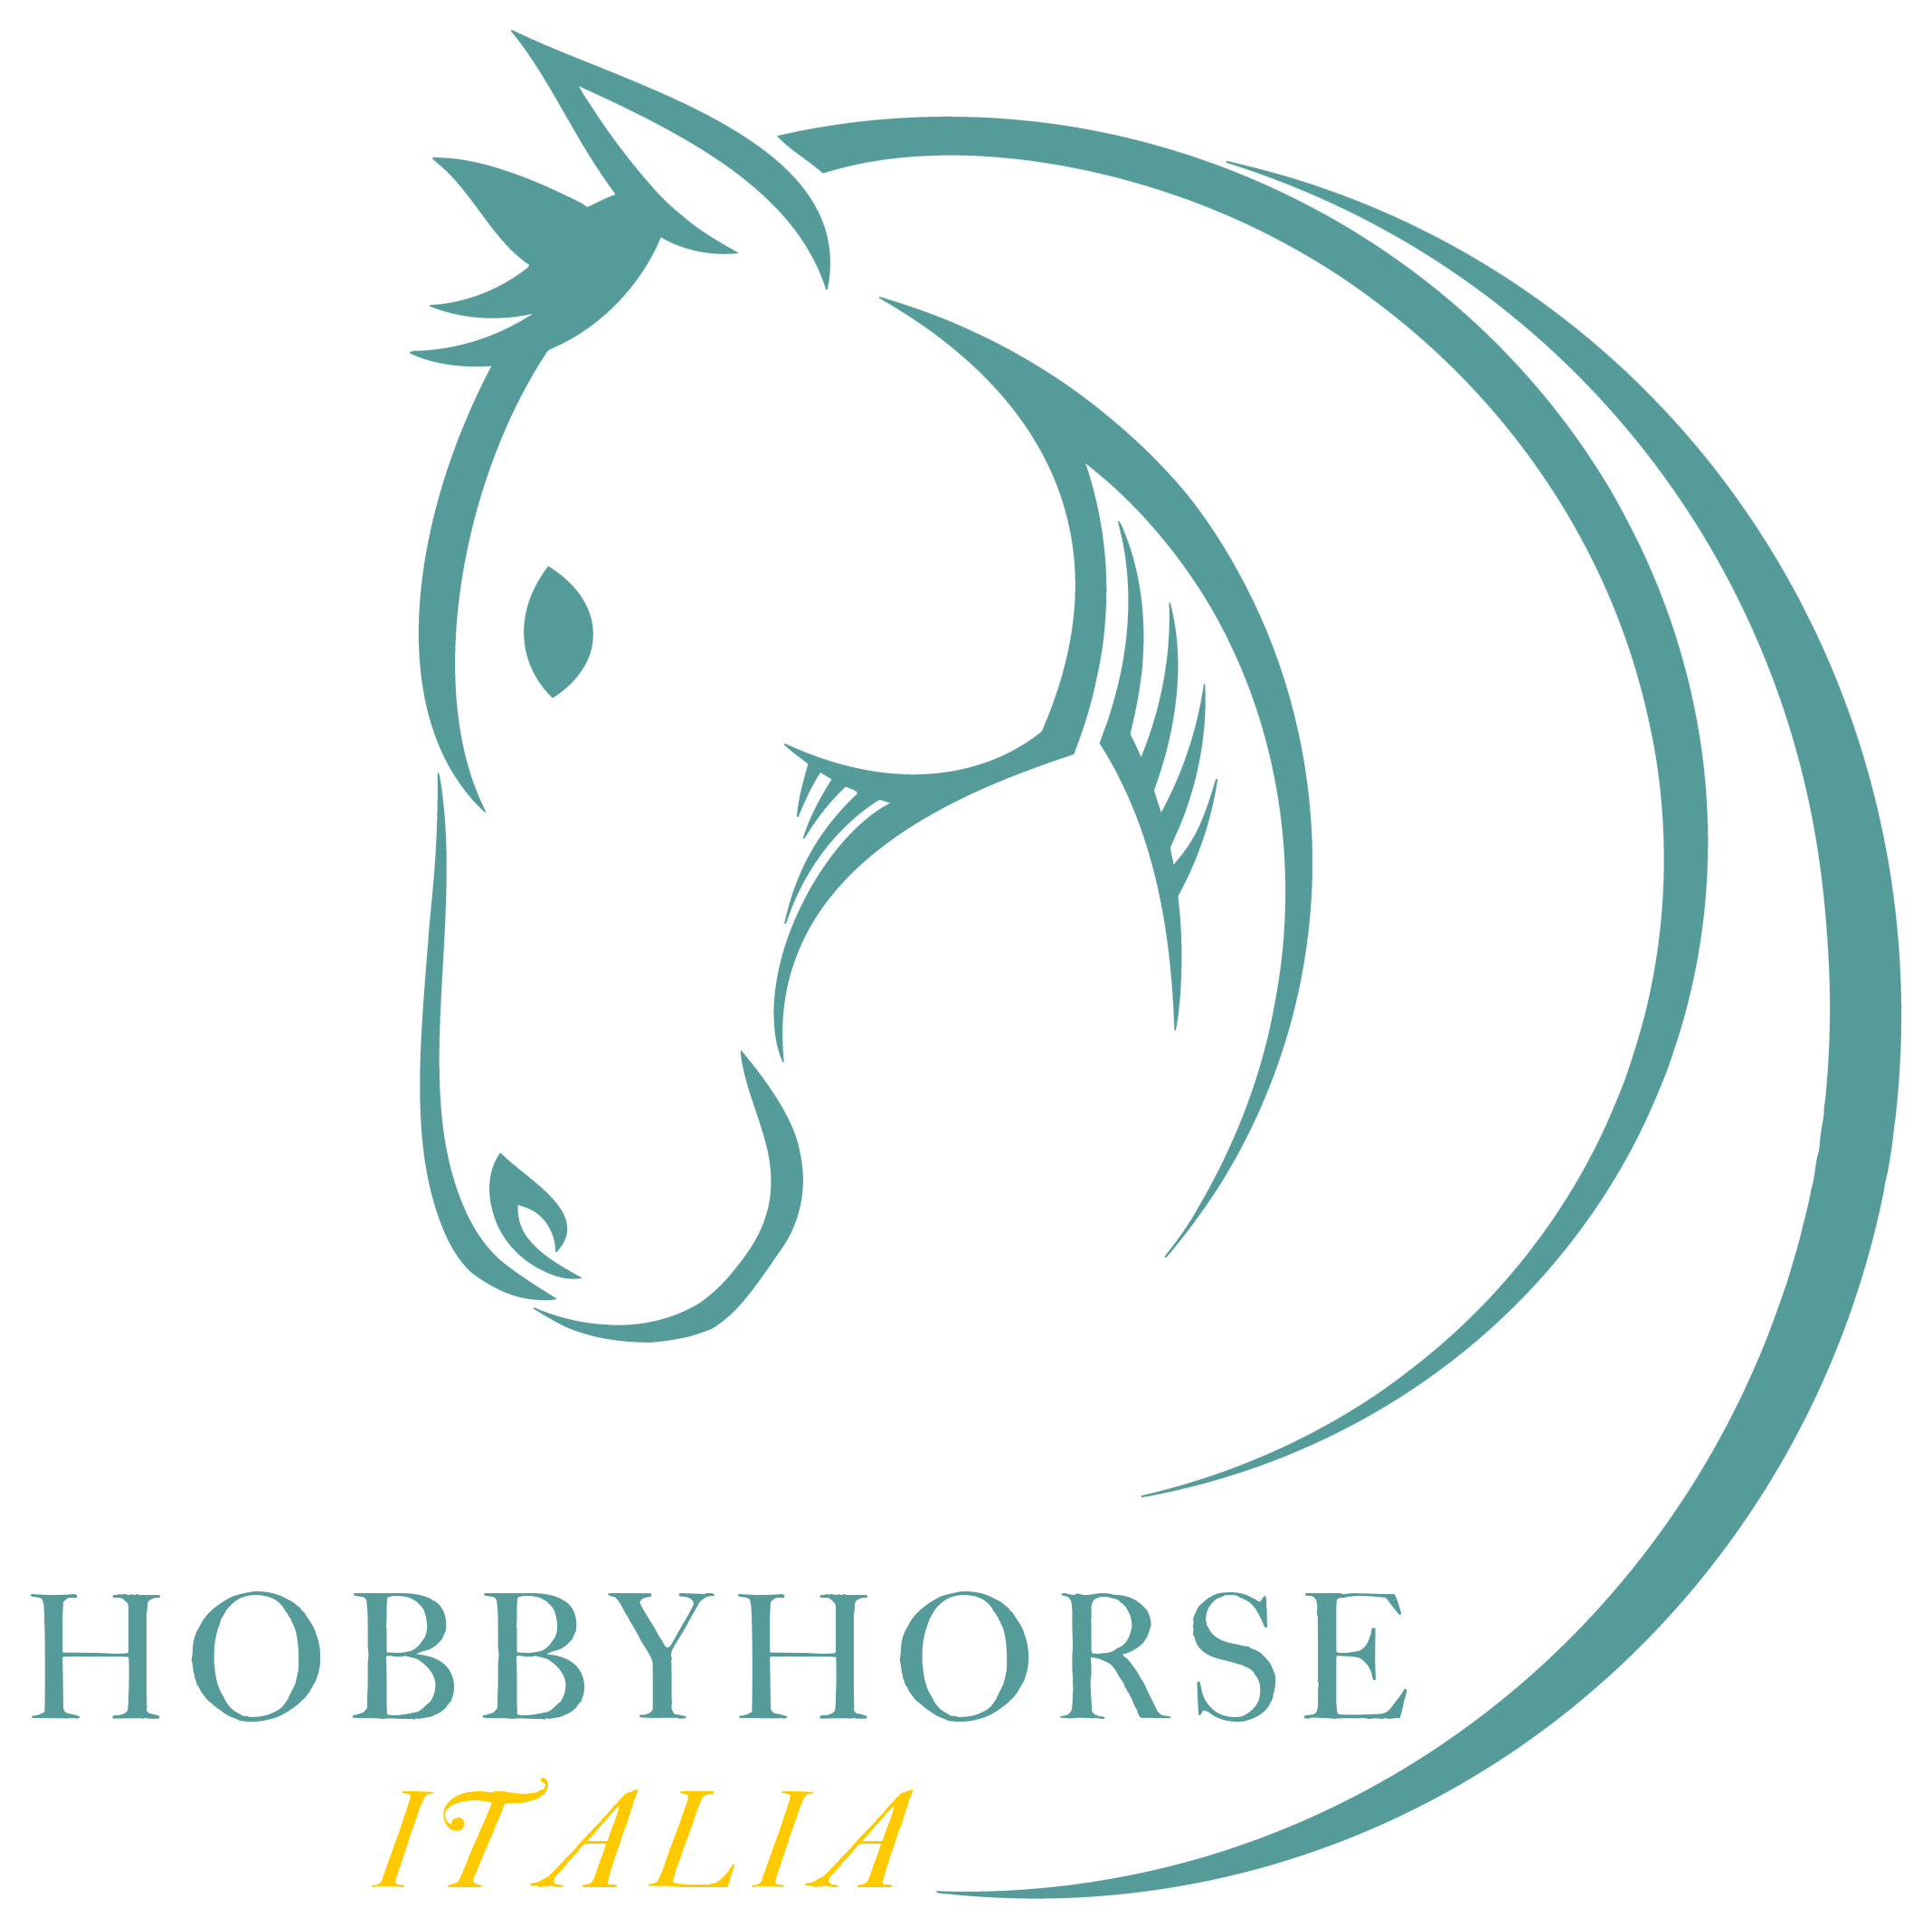 Home - Hobby Horse Italia